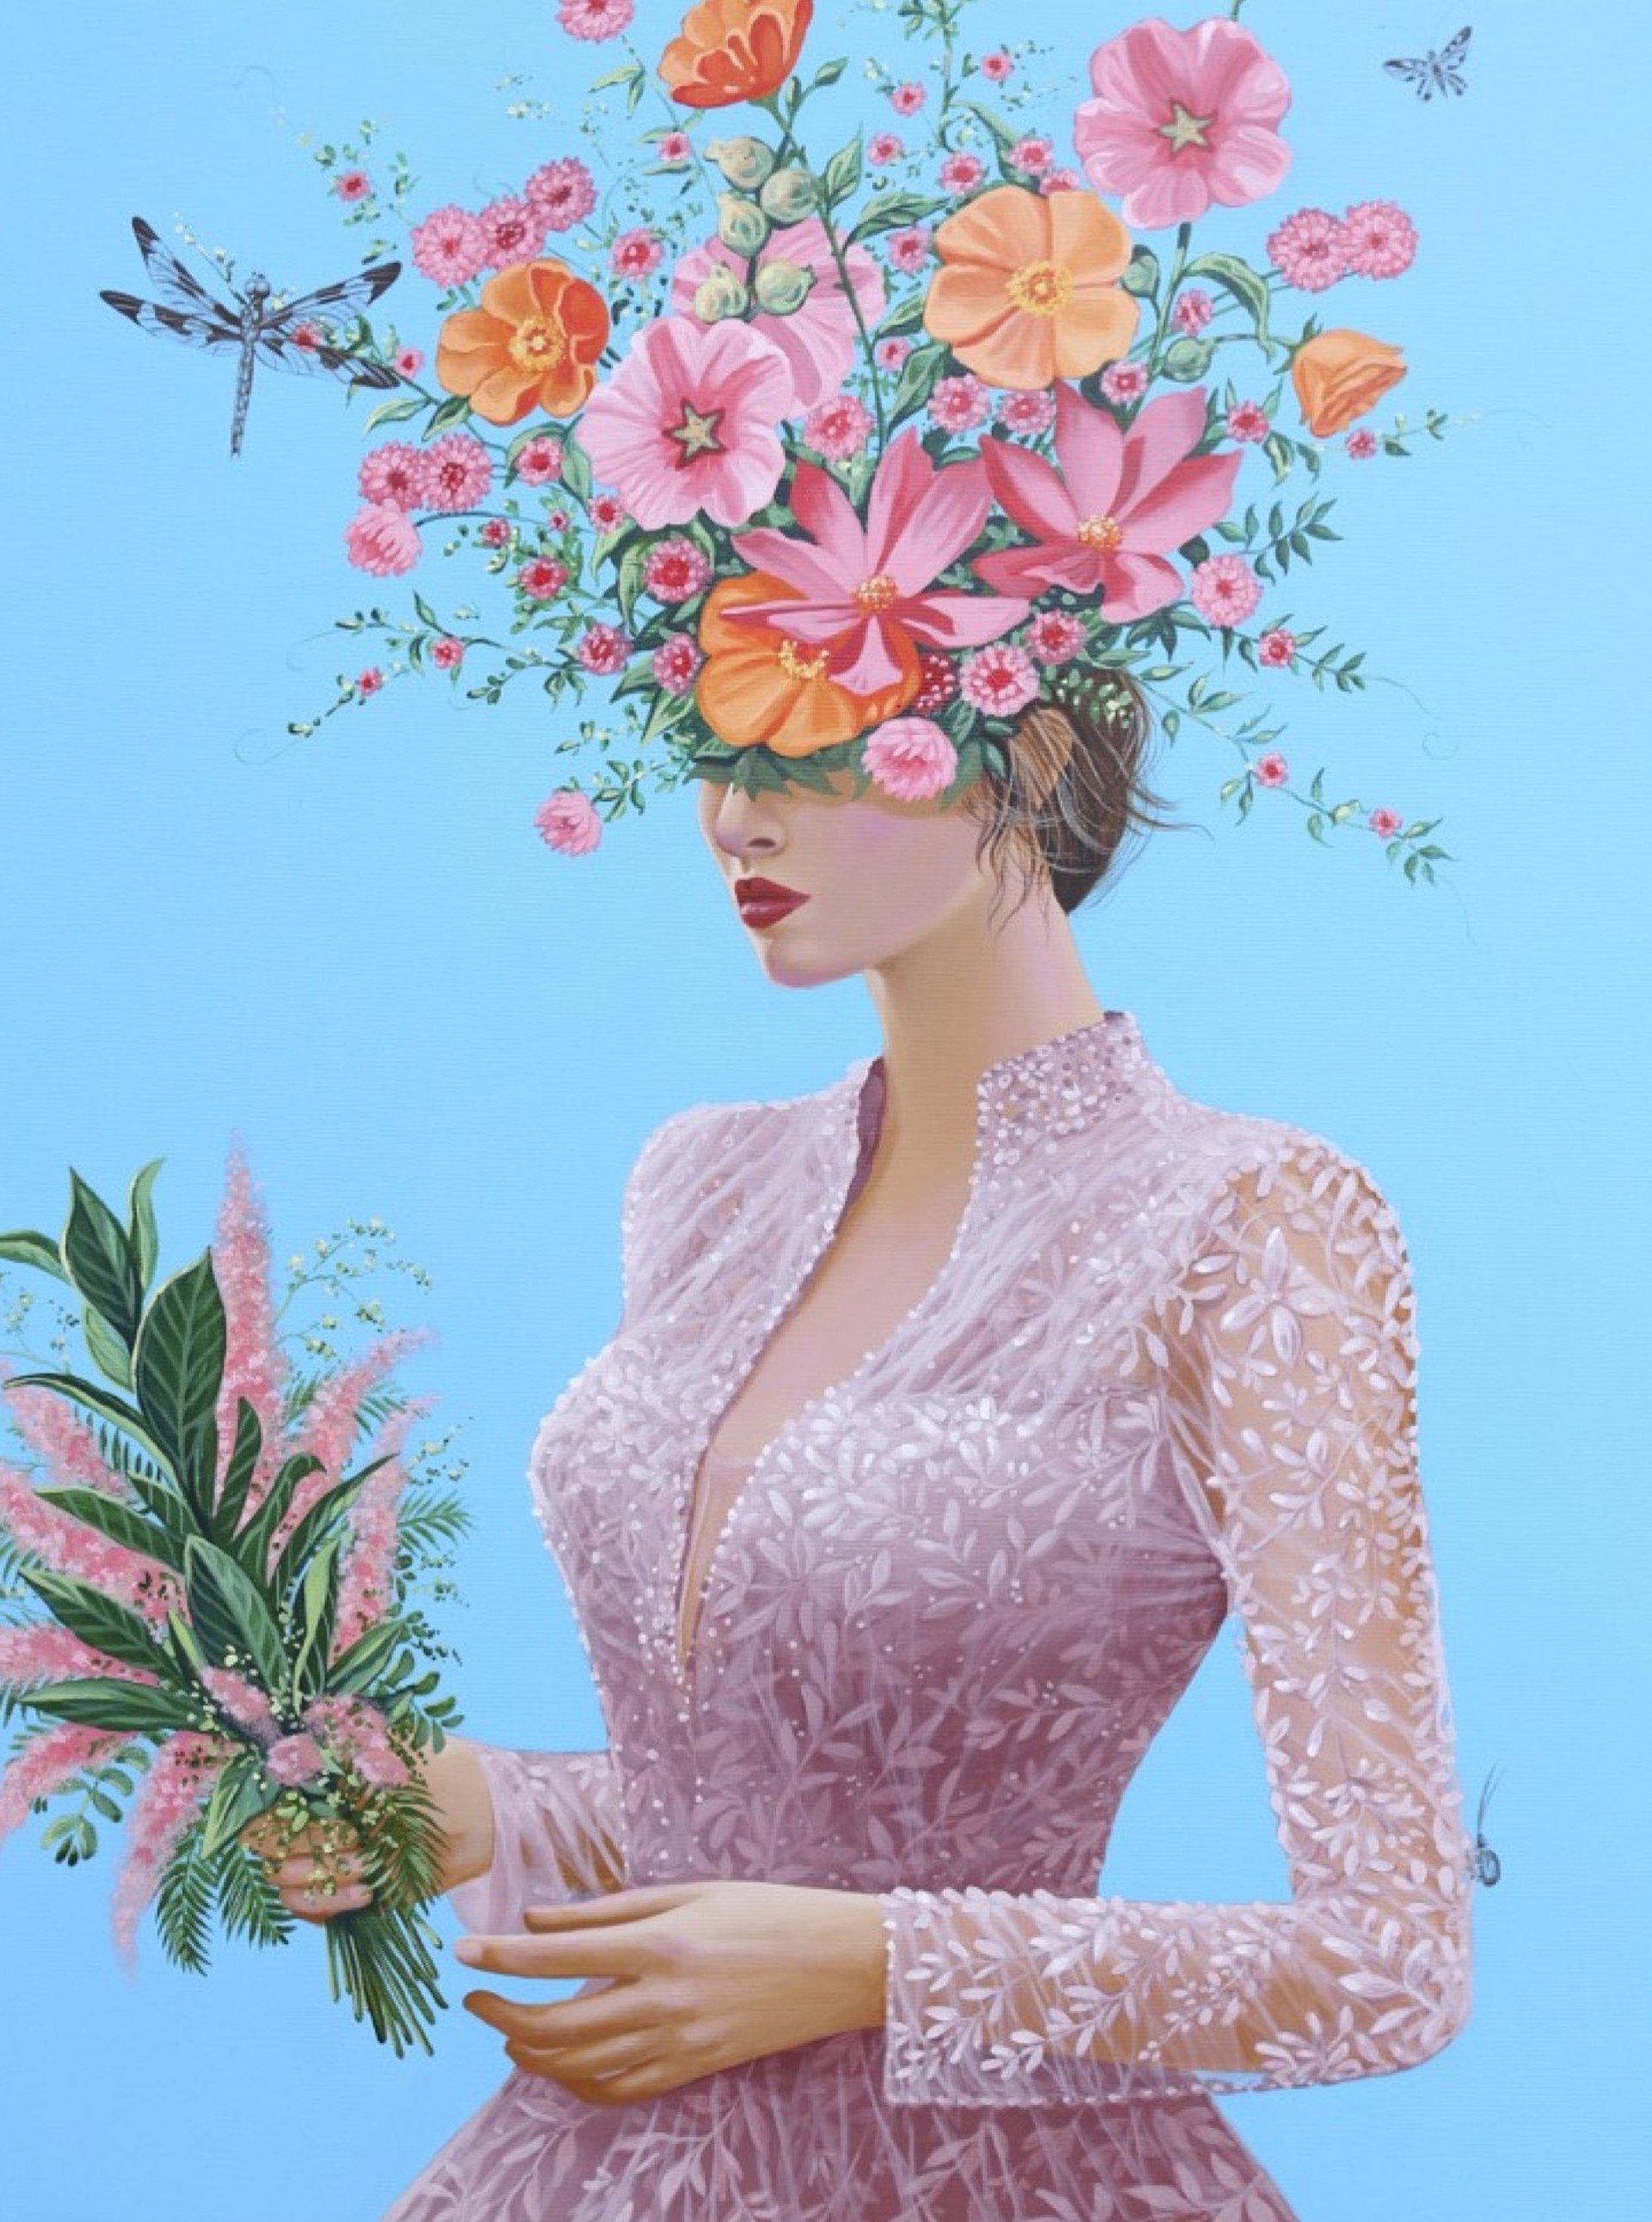 Pink Bouquet by Carlos Gamez de Francisco